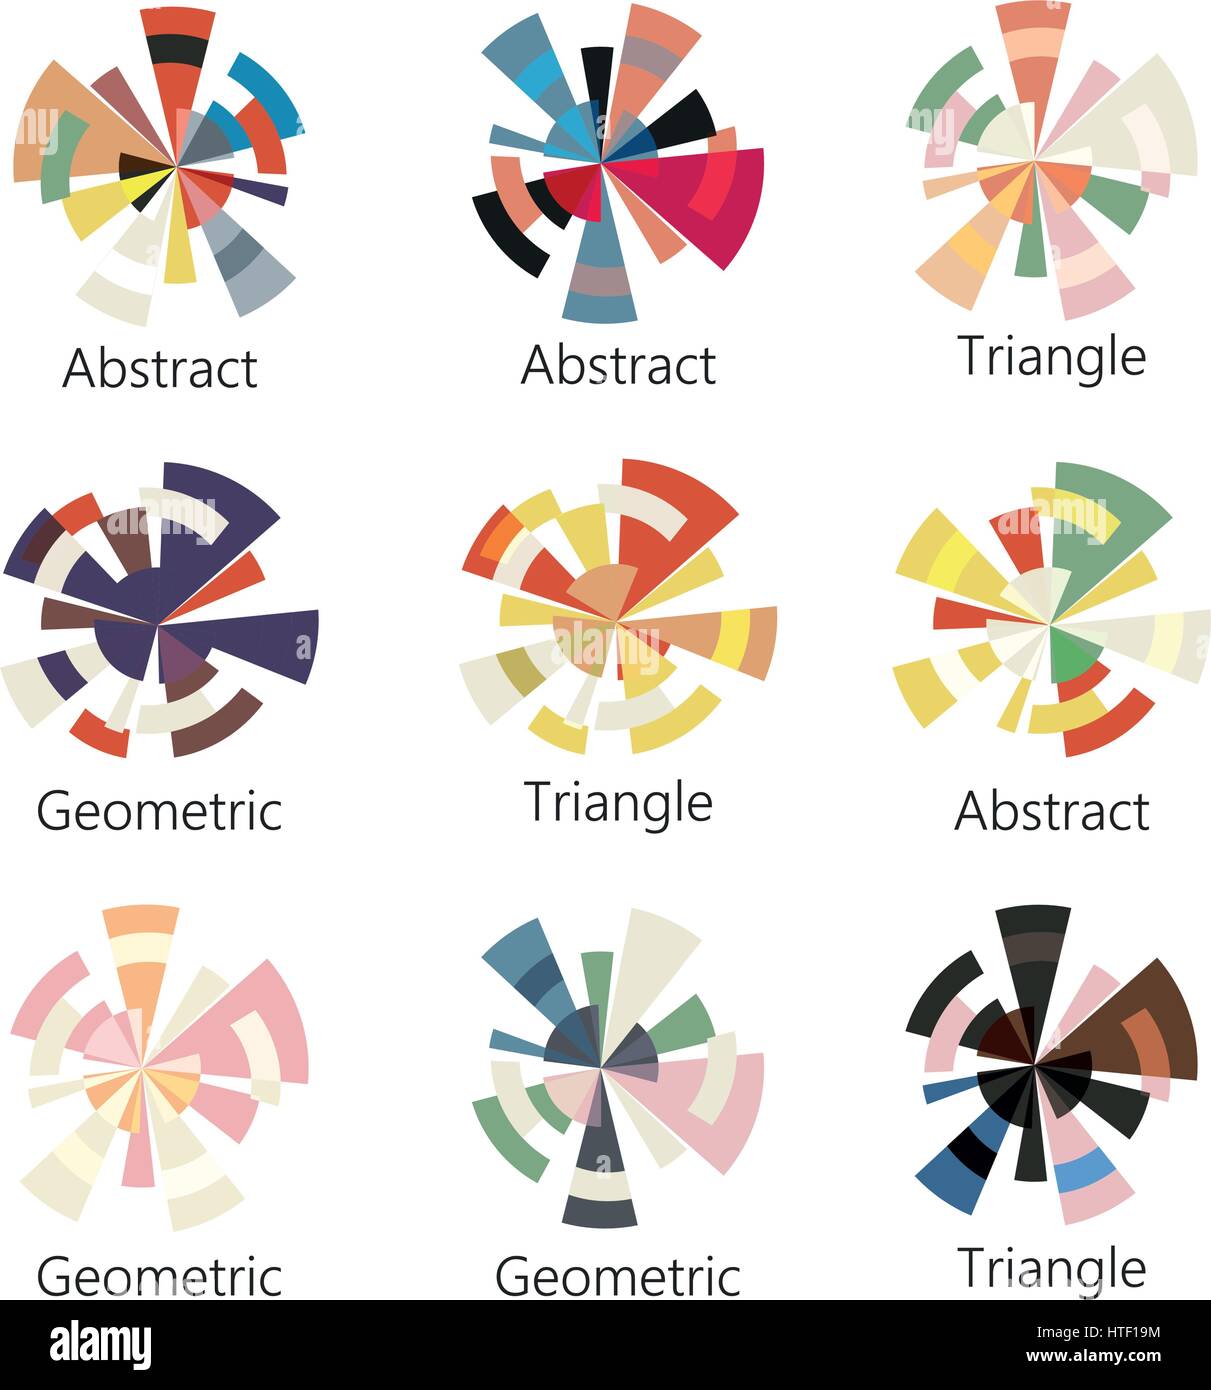 Isolierte abstrakt bunt Runde Form Logo von Dreiecken legen auf weißem Hintergrund, Diagramm Symbolsammlung, geometrische Elemente-Vektor-illustration Stock Vektor